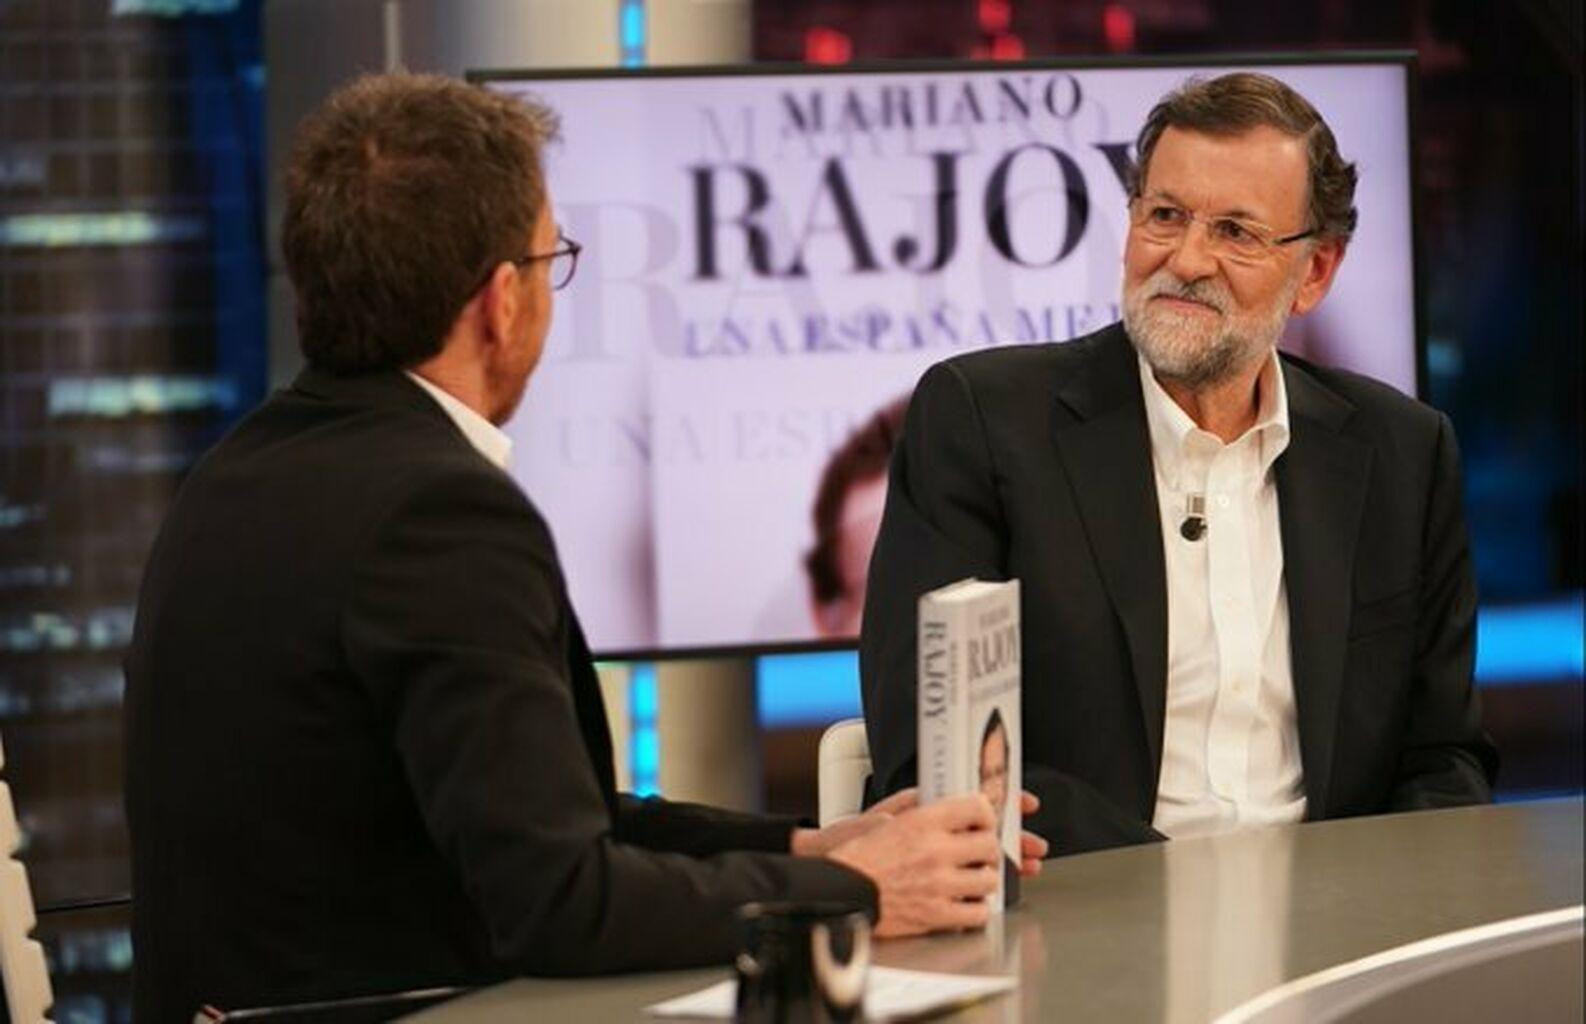 Mariano Rajoy presentando su nuevo libro en El Hormiguero / INSTAGRAM